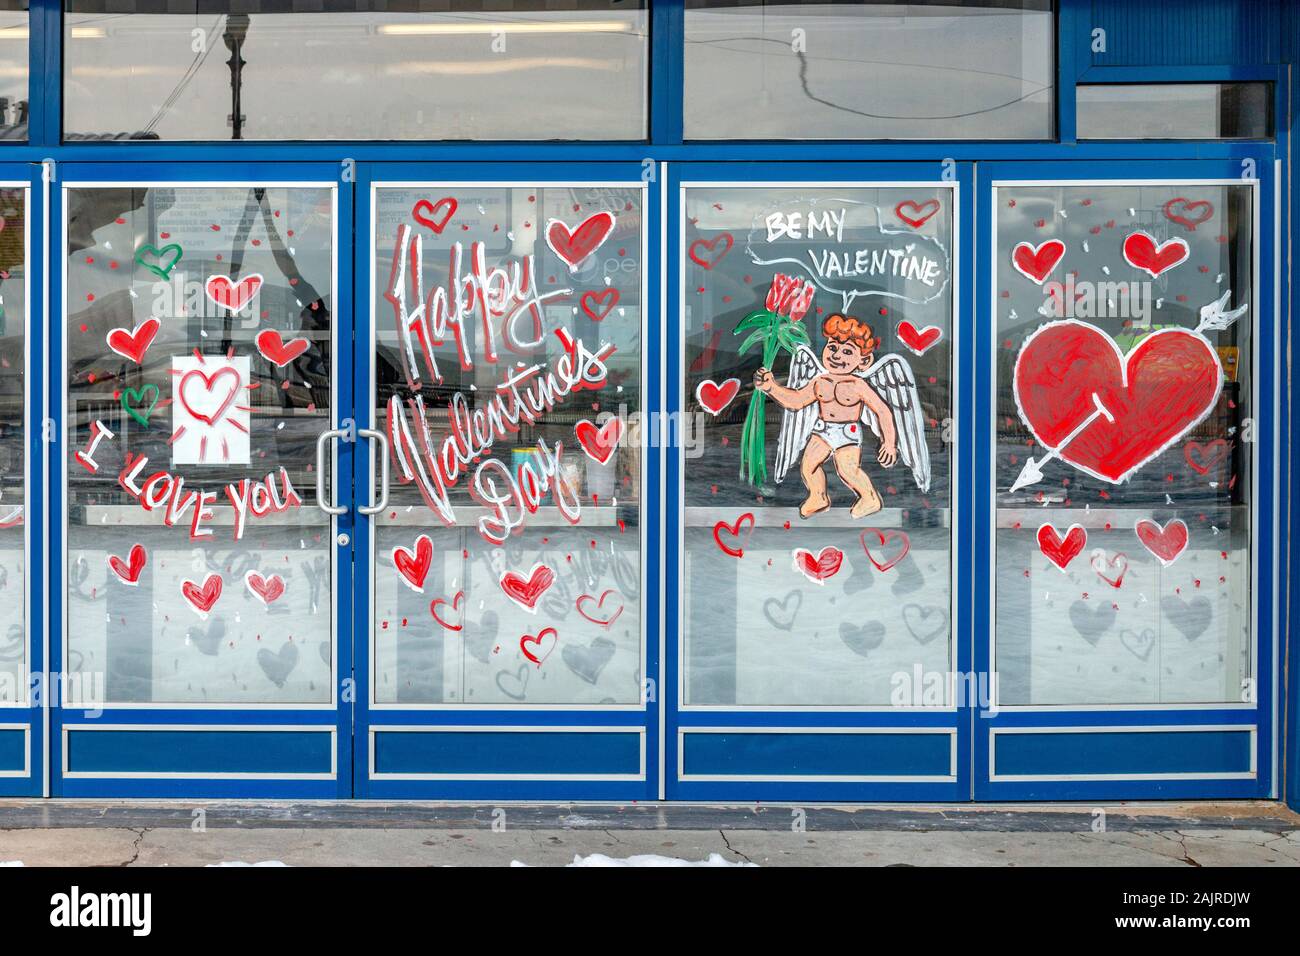 100+ Valentine's Day Window Display, Ideas & Designs